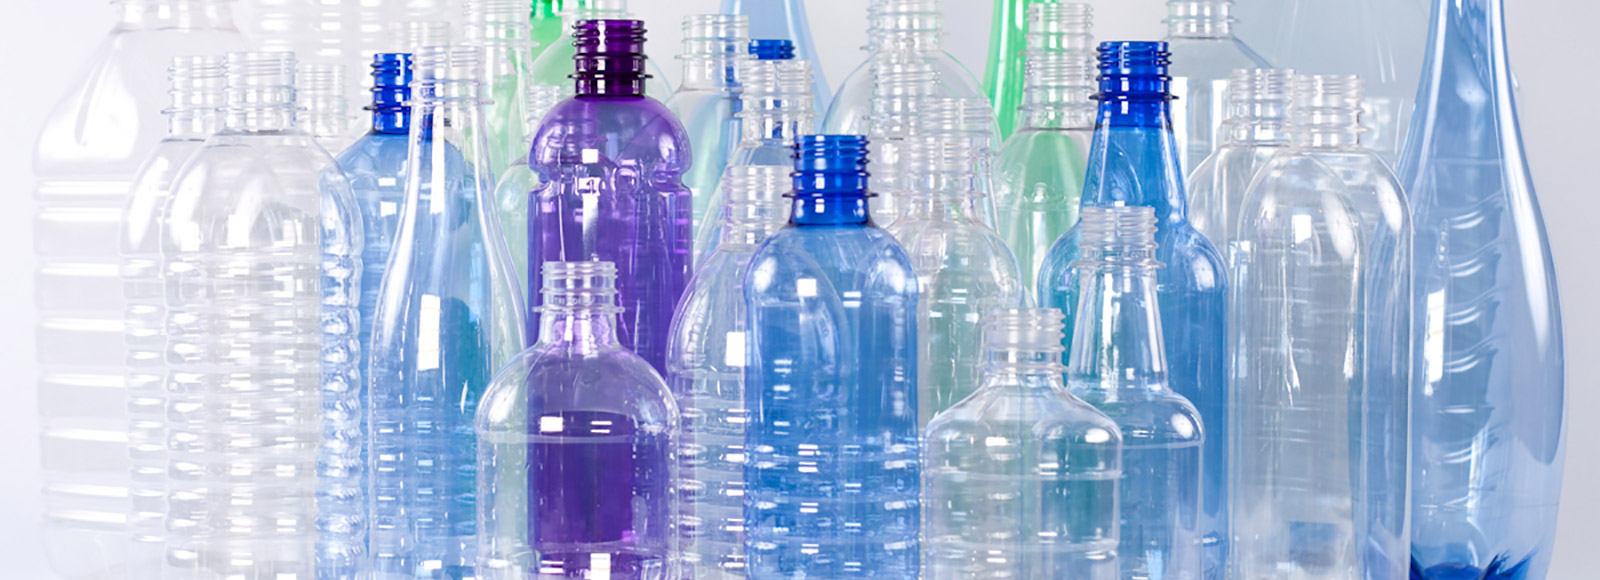 Что нужно знать о пластиковых бутылках, которые мы покупаем в магазине